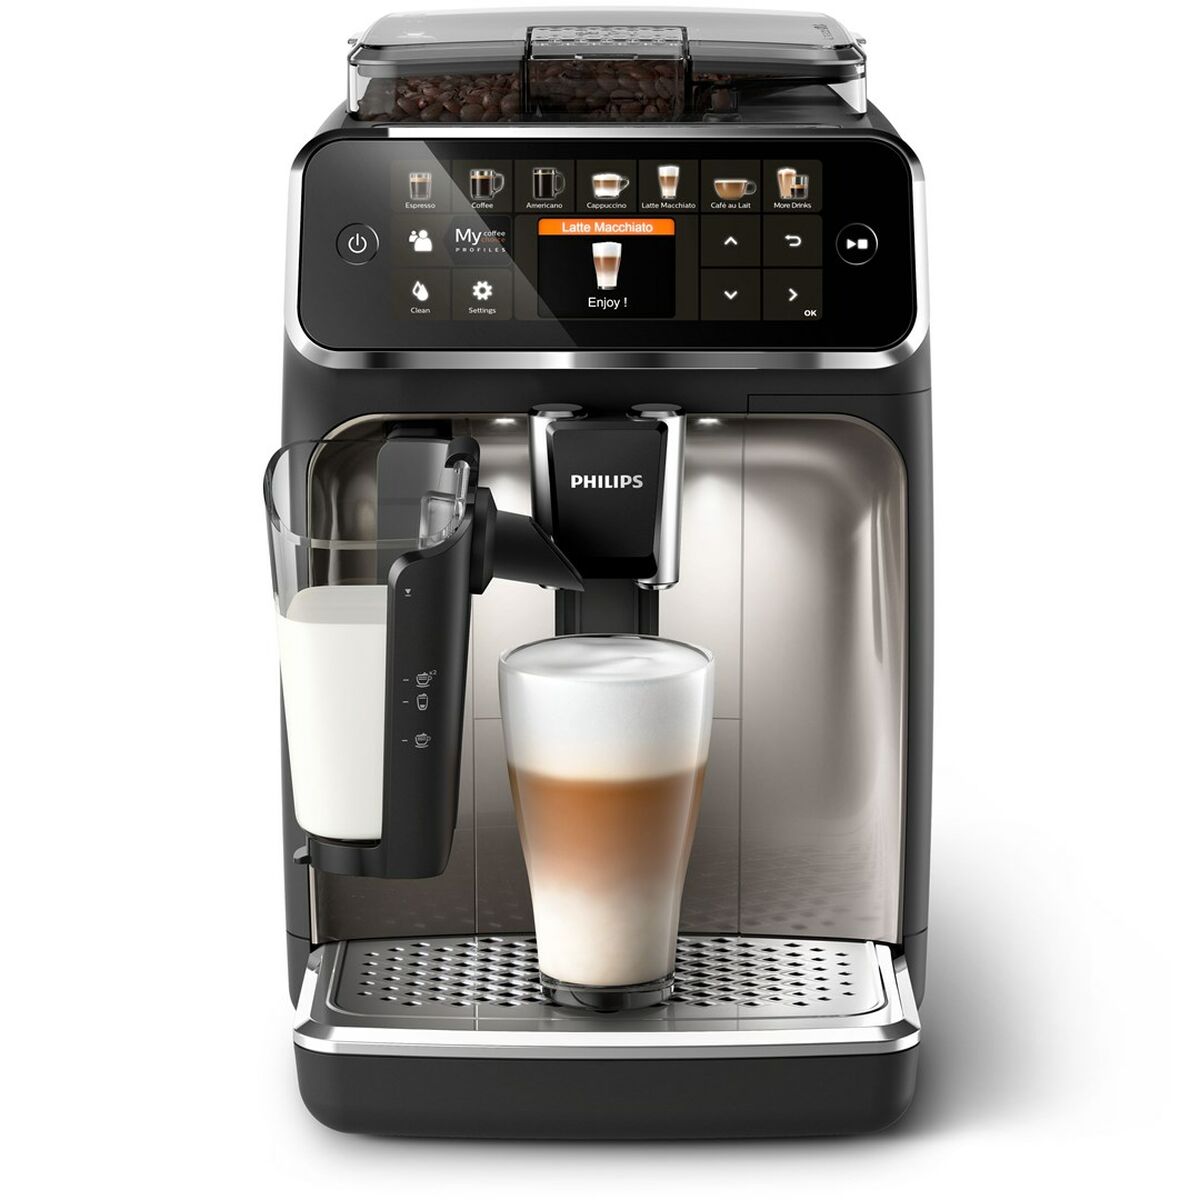 Superautomatische Kaffeemaschine Philips EP5447/90 Schwarz Chrom 1500 W 15 bar 1,8 L - CA International 